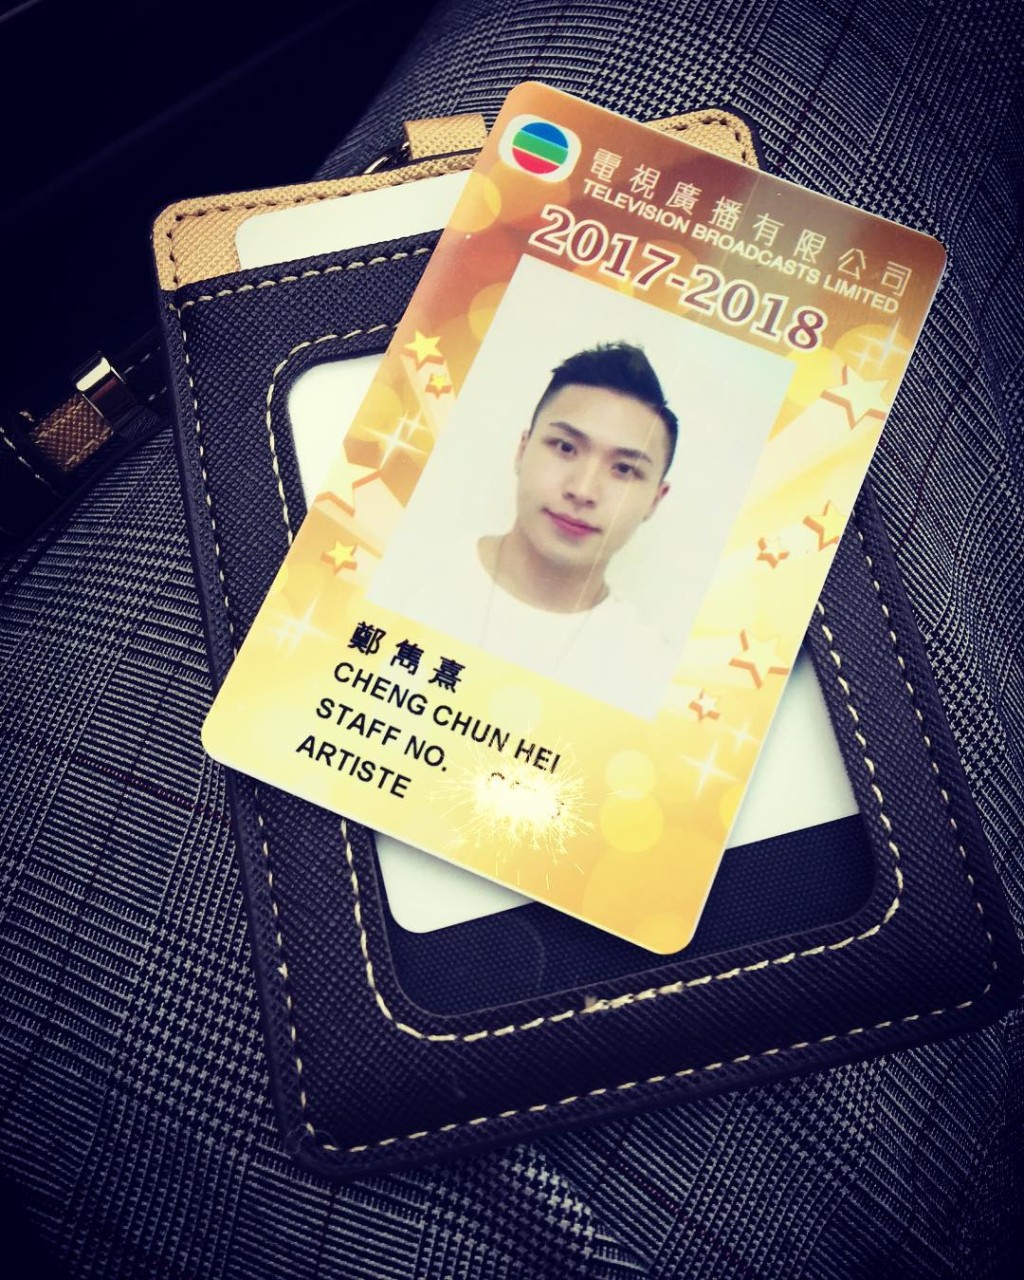 郑隽熹于2017年报读TVB艺员训练班入行。